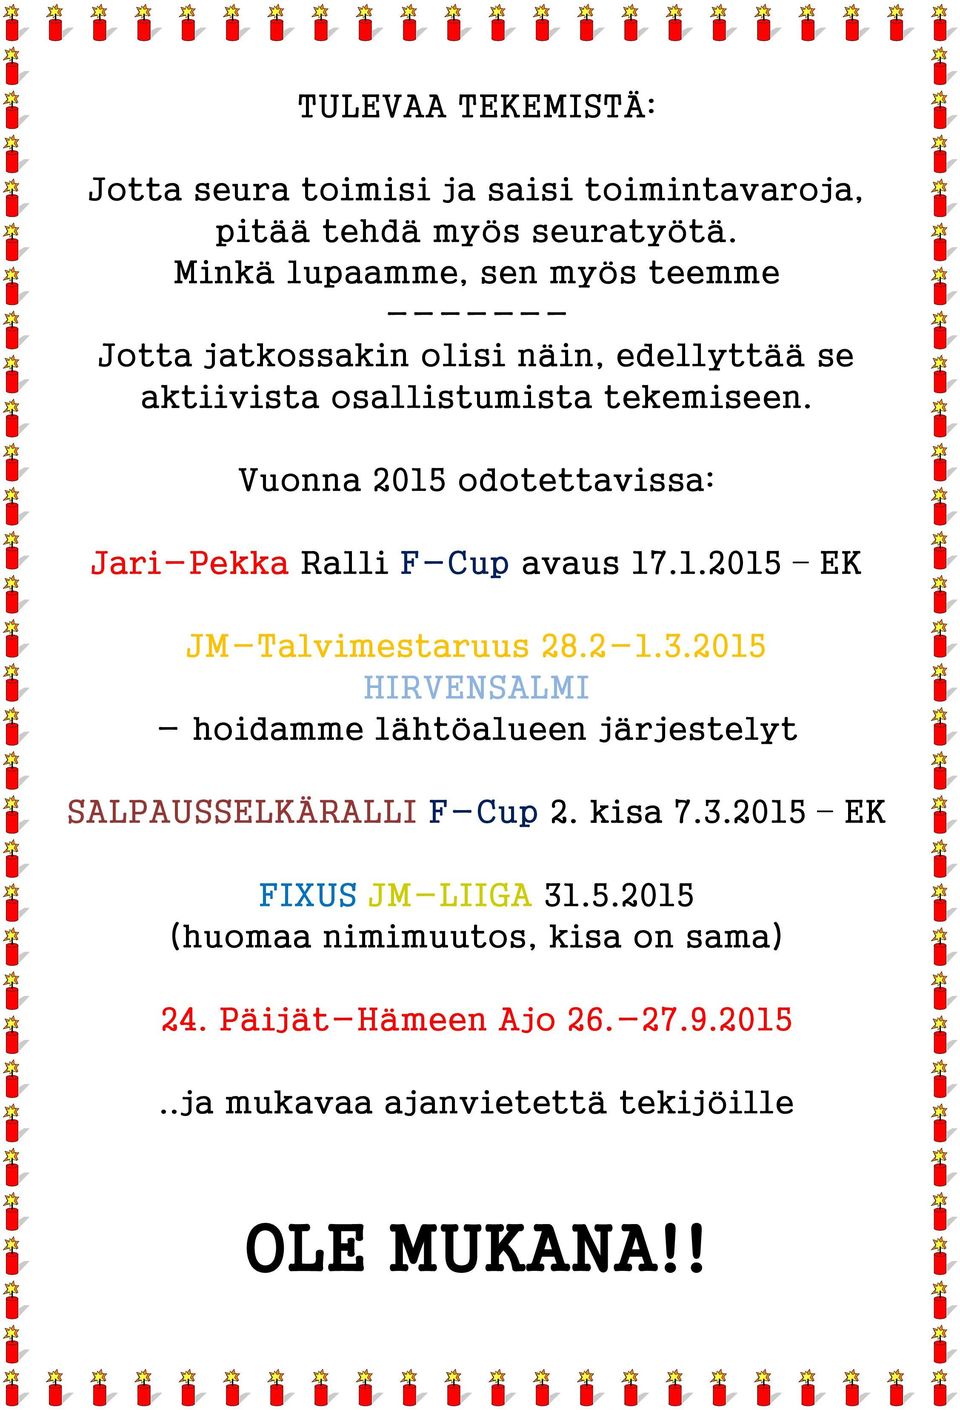 Vuonna 2015 odotettavissa: Jari-Pekka Ralli F-Cup avaus 17.1.2015 EK JM-Talvimestaruus 28.2-1.3.